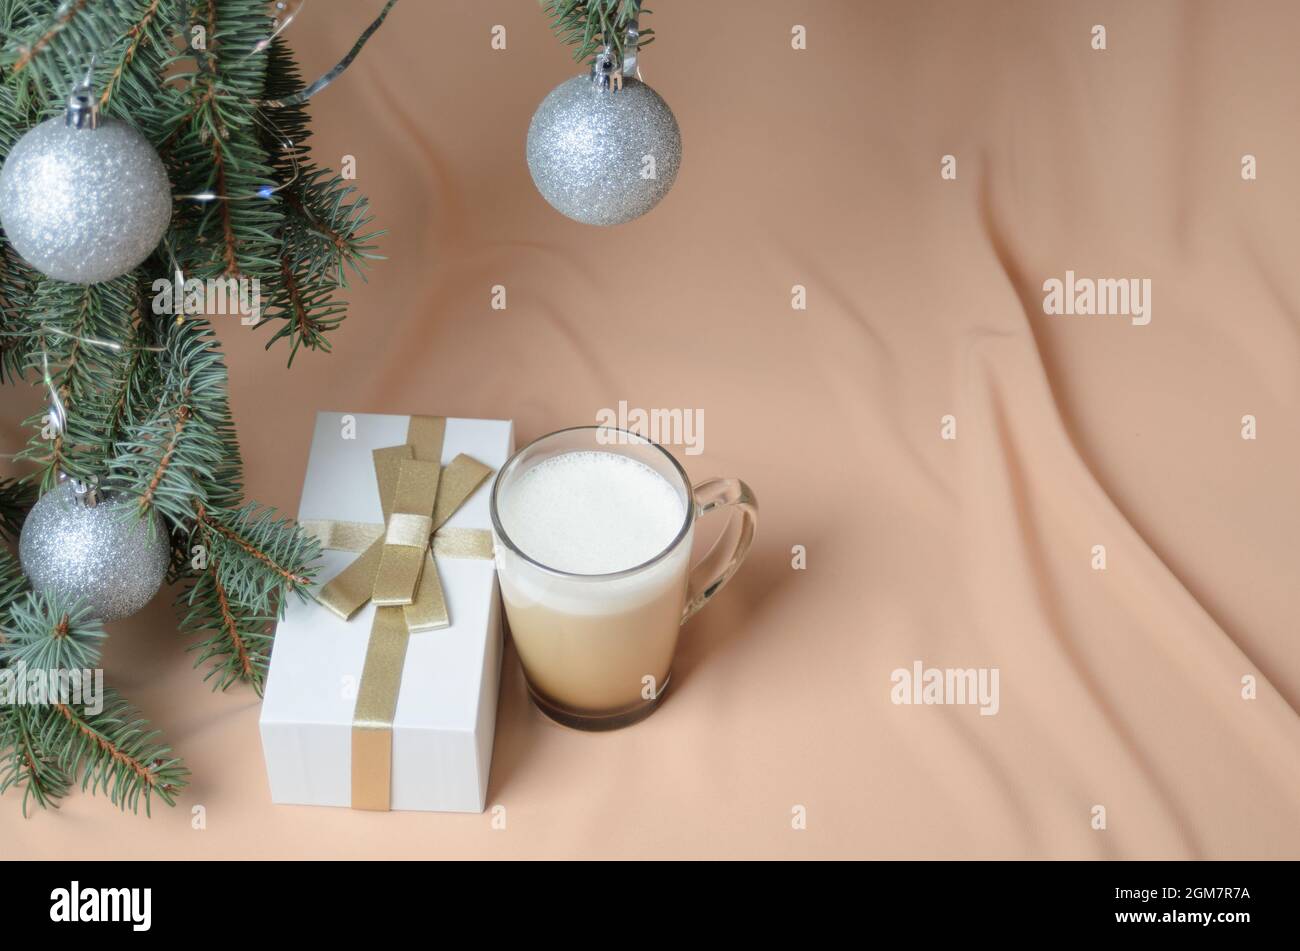 Eine Neujahrskomposition aus Zweigen eines Weihnachtsbaums, verziert mit silbernen Kugeln, einer Geschenkbox, einem Glaskrug mit Kaffee und Milch auf dem Backgr Stockfoto